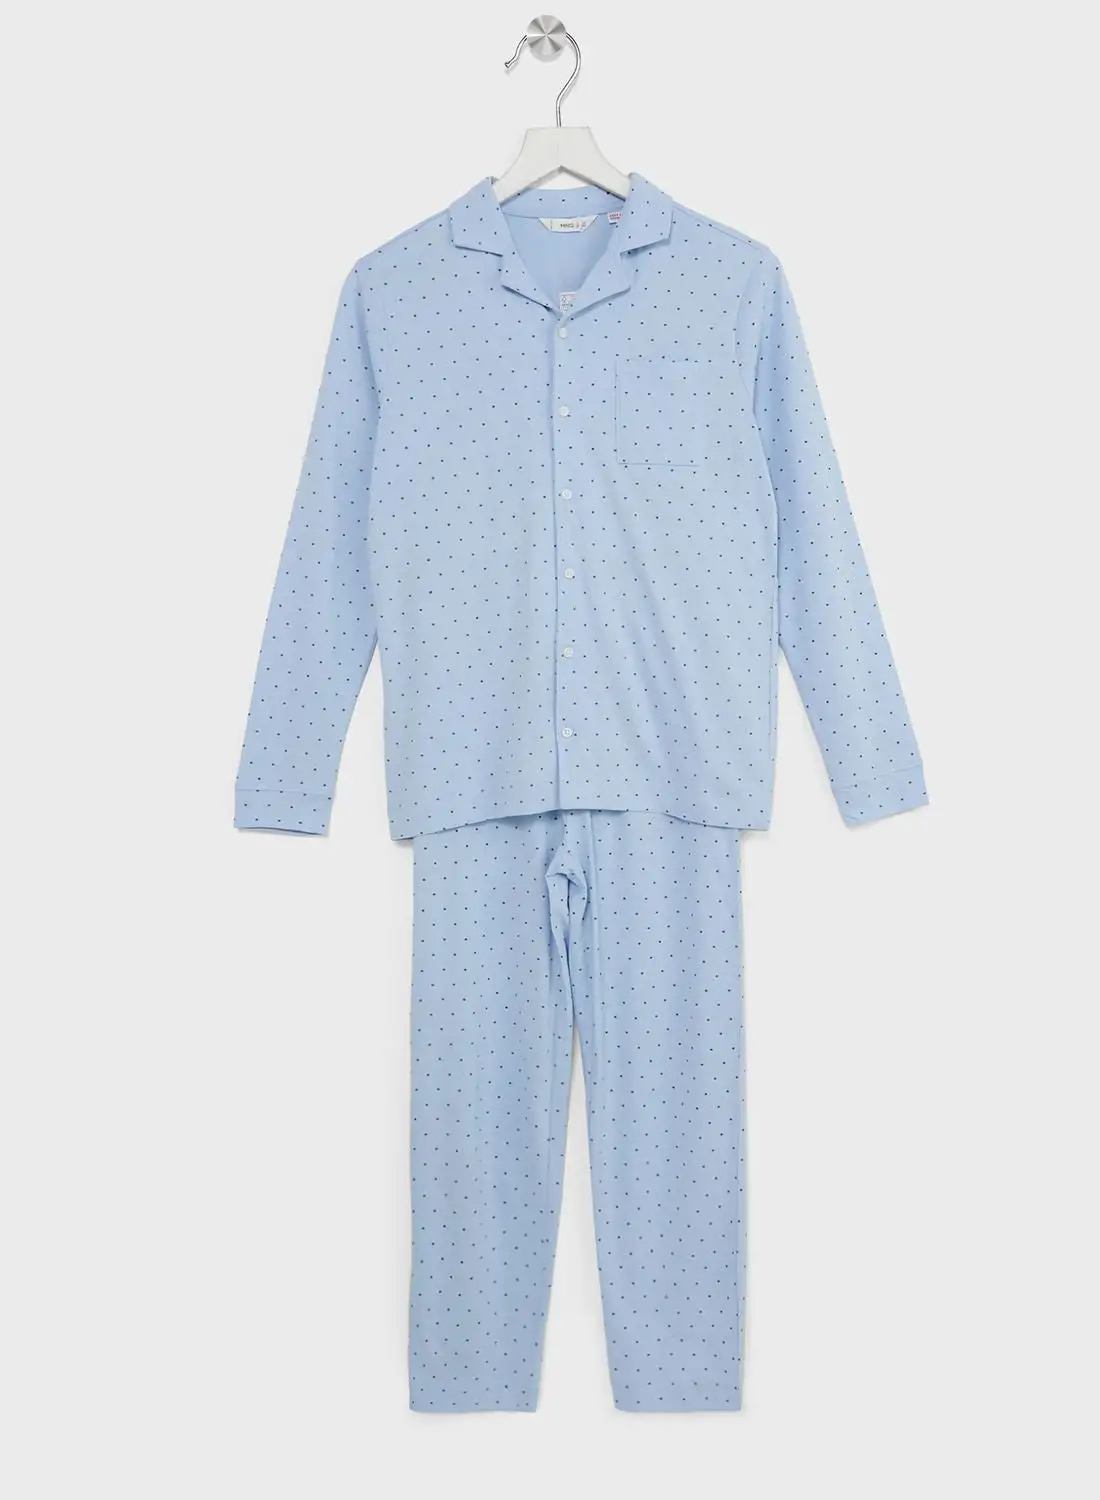 MANGO Kids Polka Dot Pyjama Set